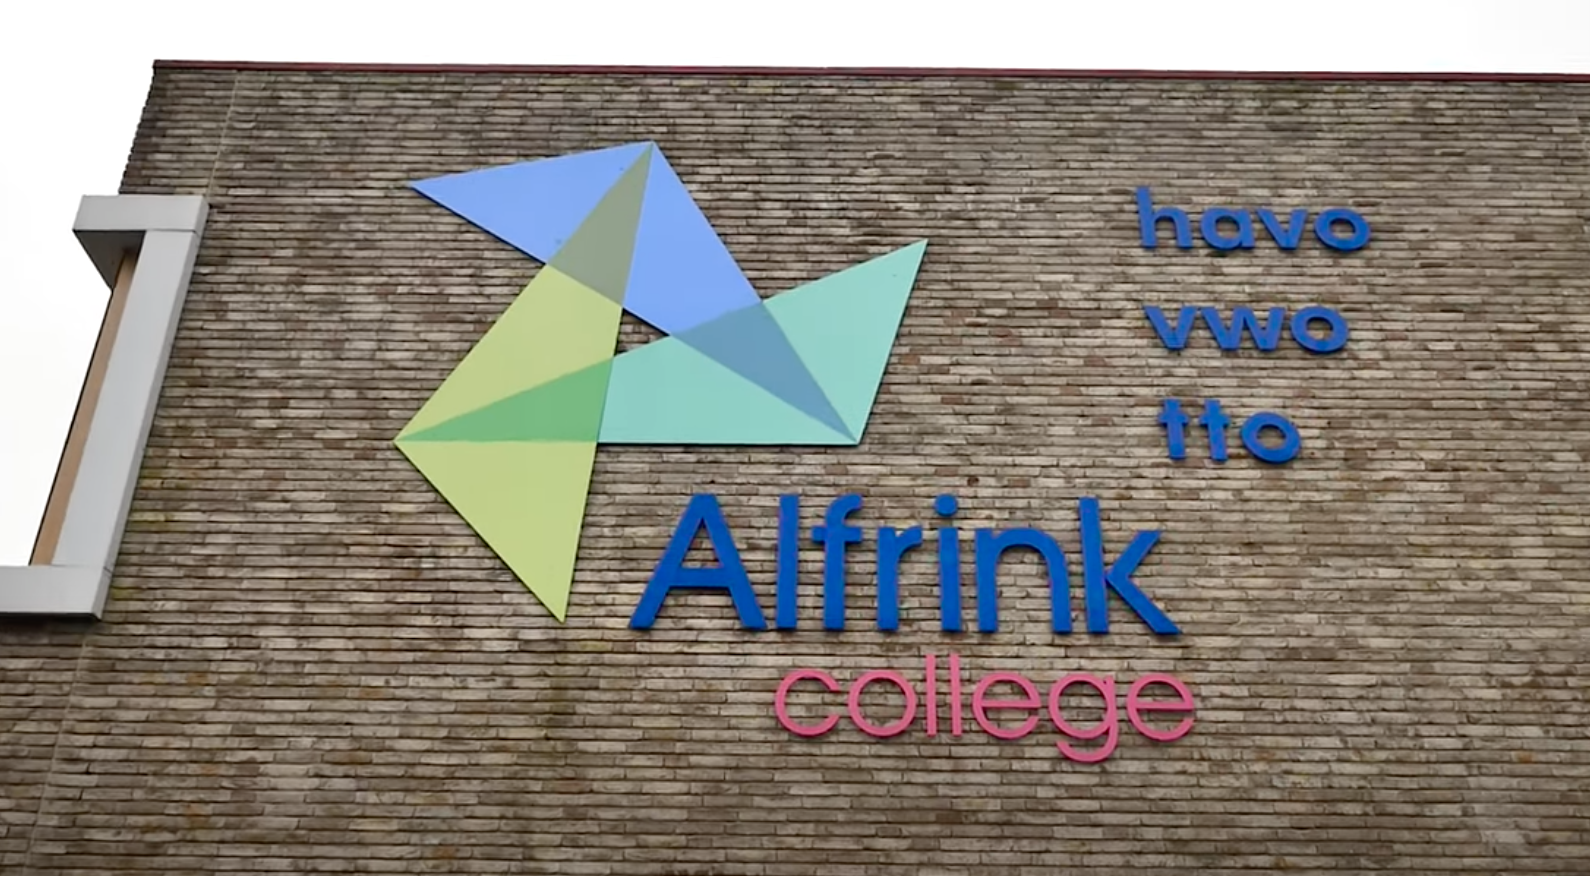 Algemen informatie Alfrink College